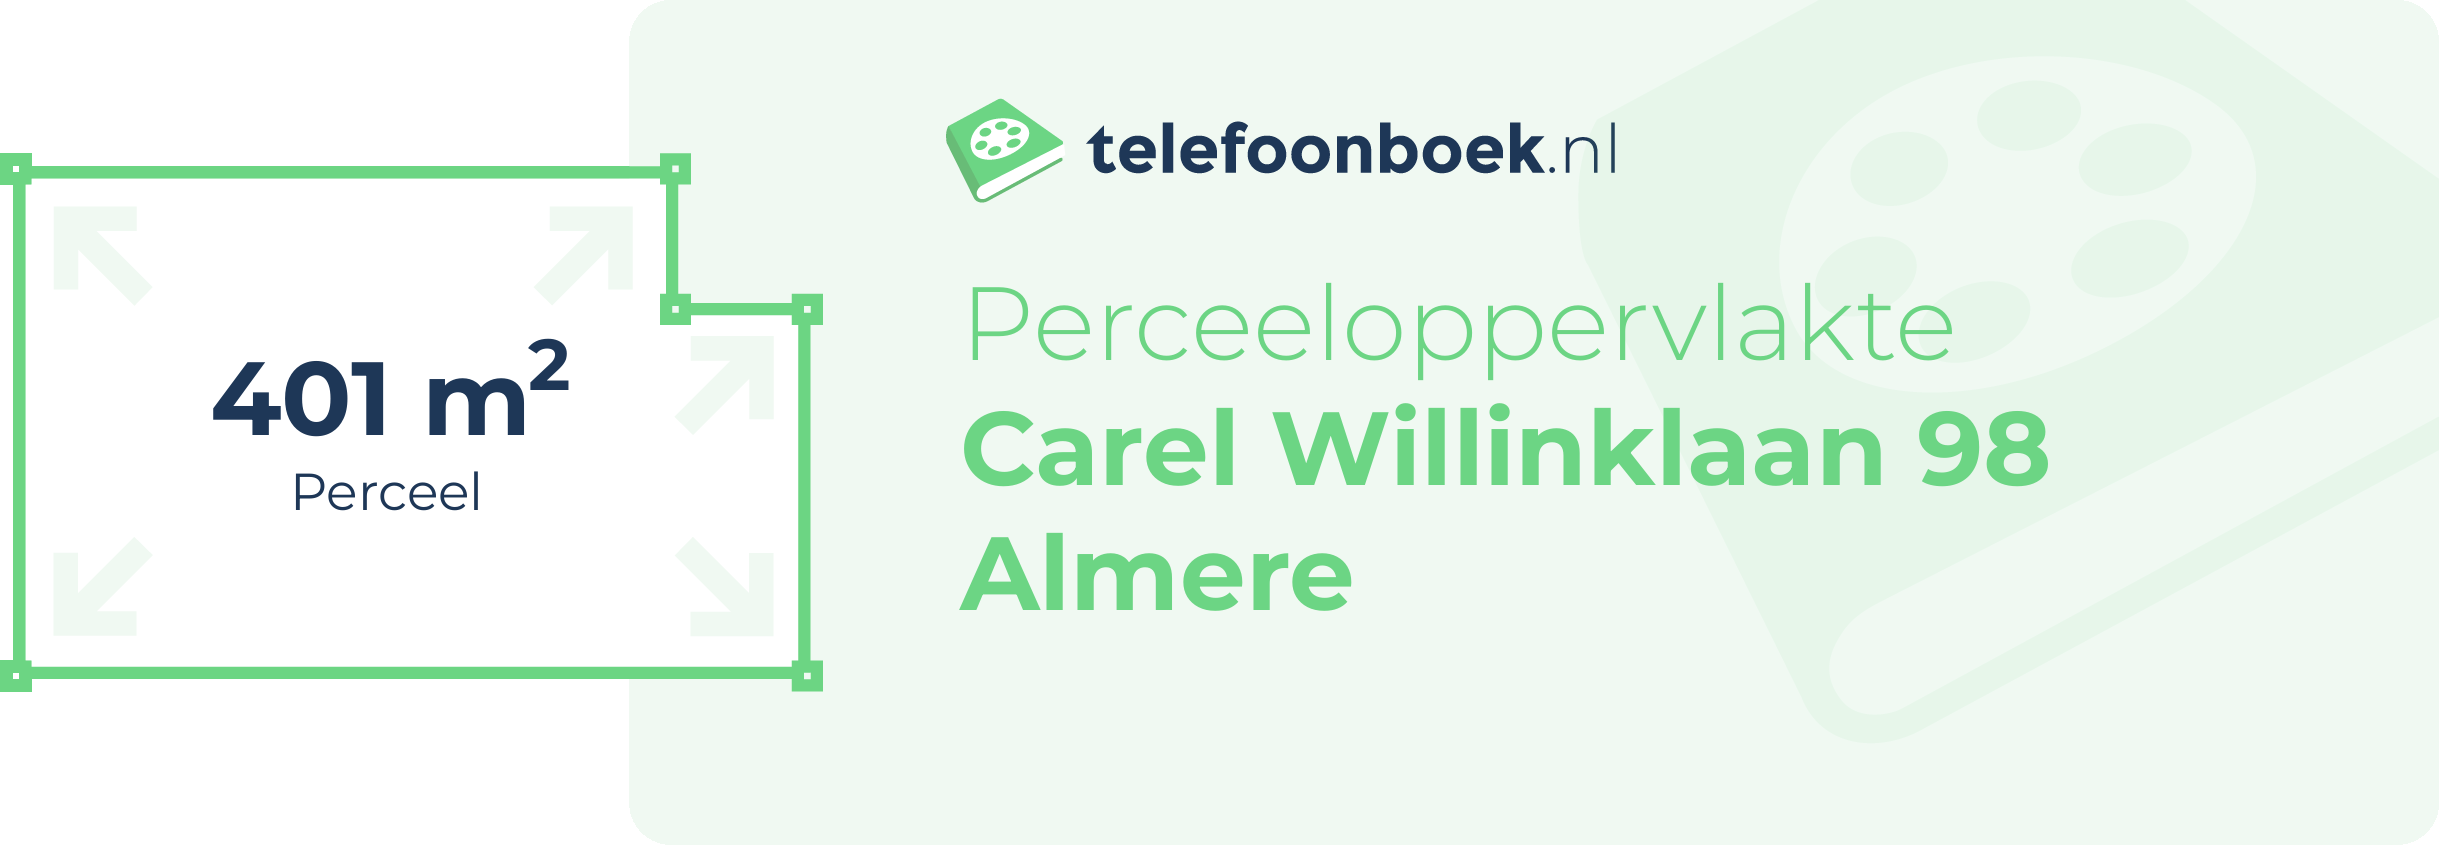 Perceeloppervlakte Carel Willinklaan 98 Almere